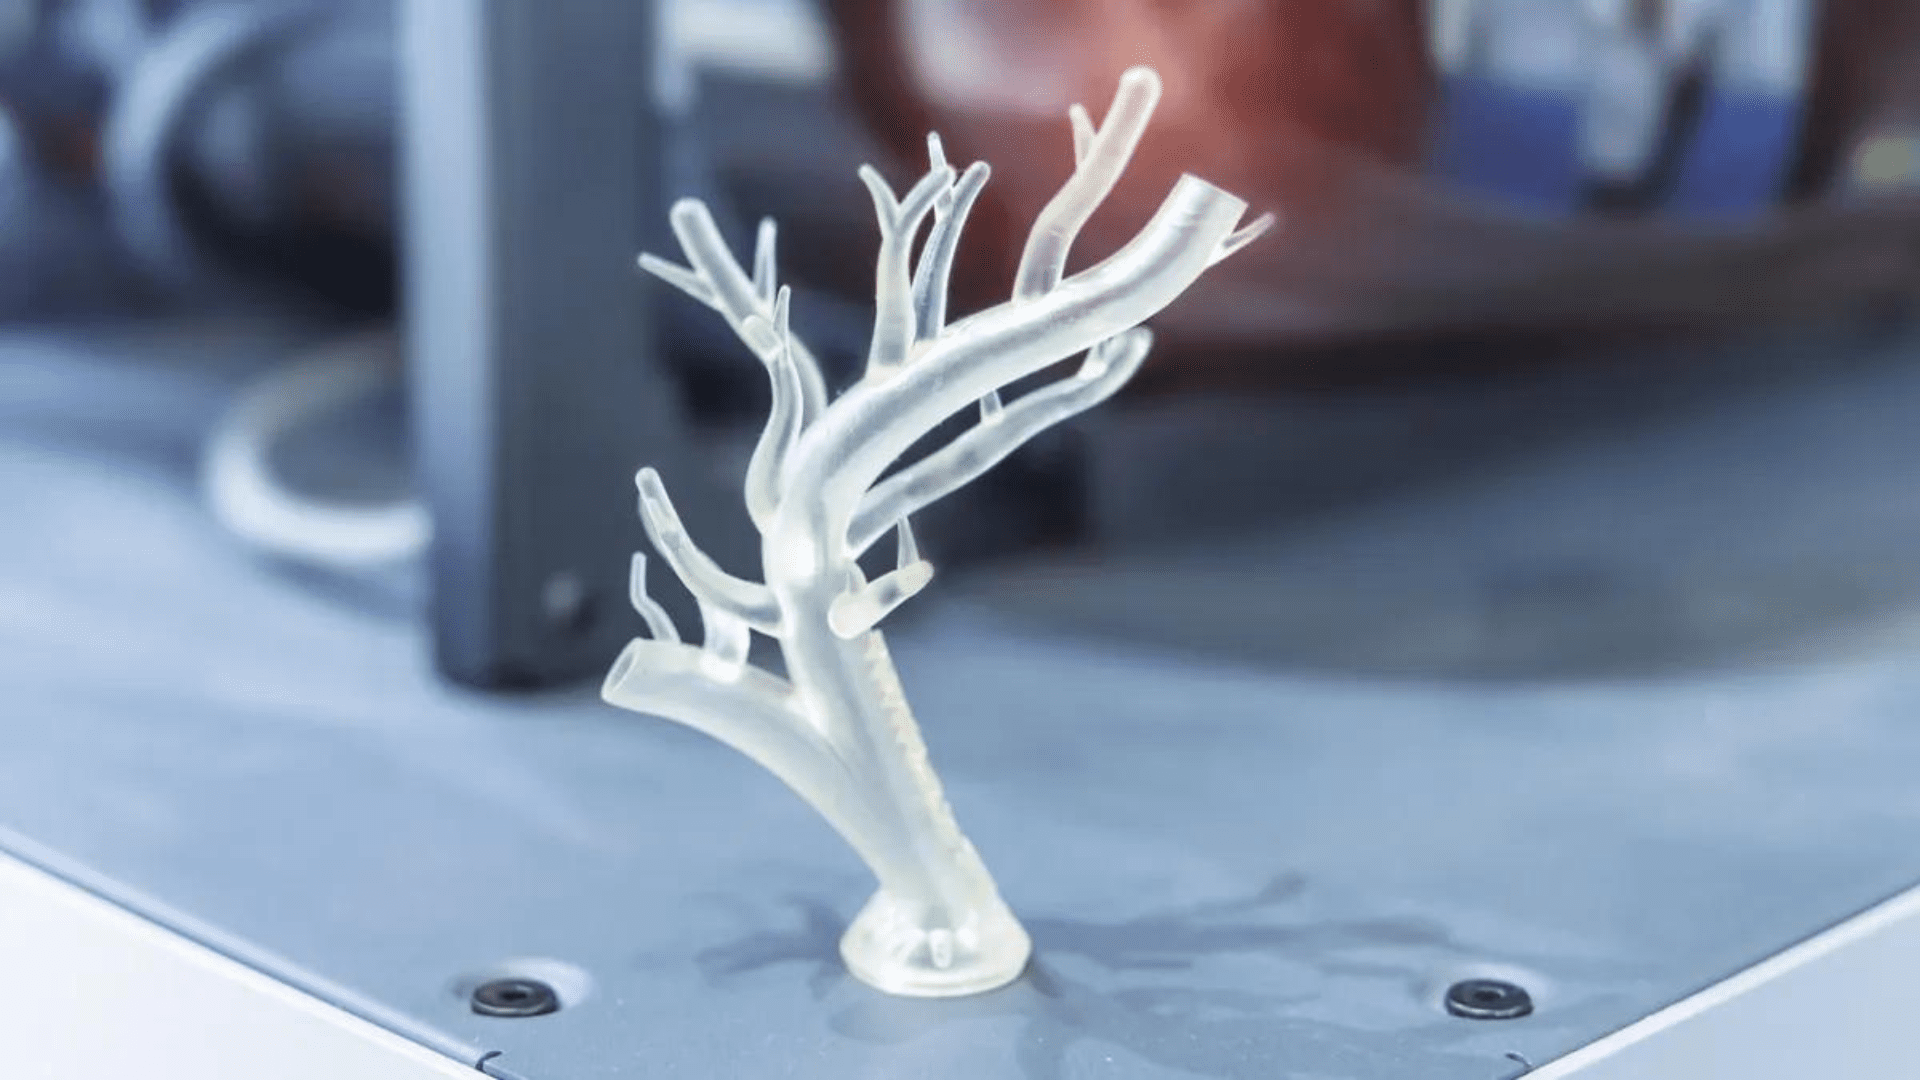 3D printed blood vessel